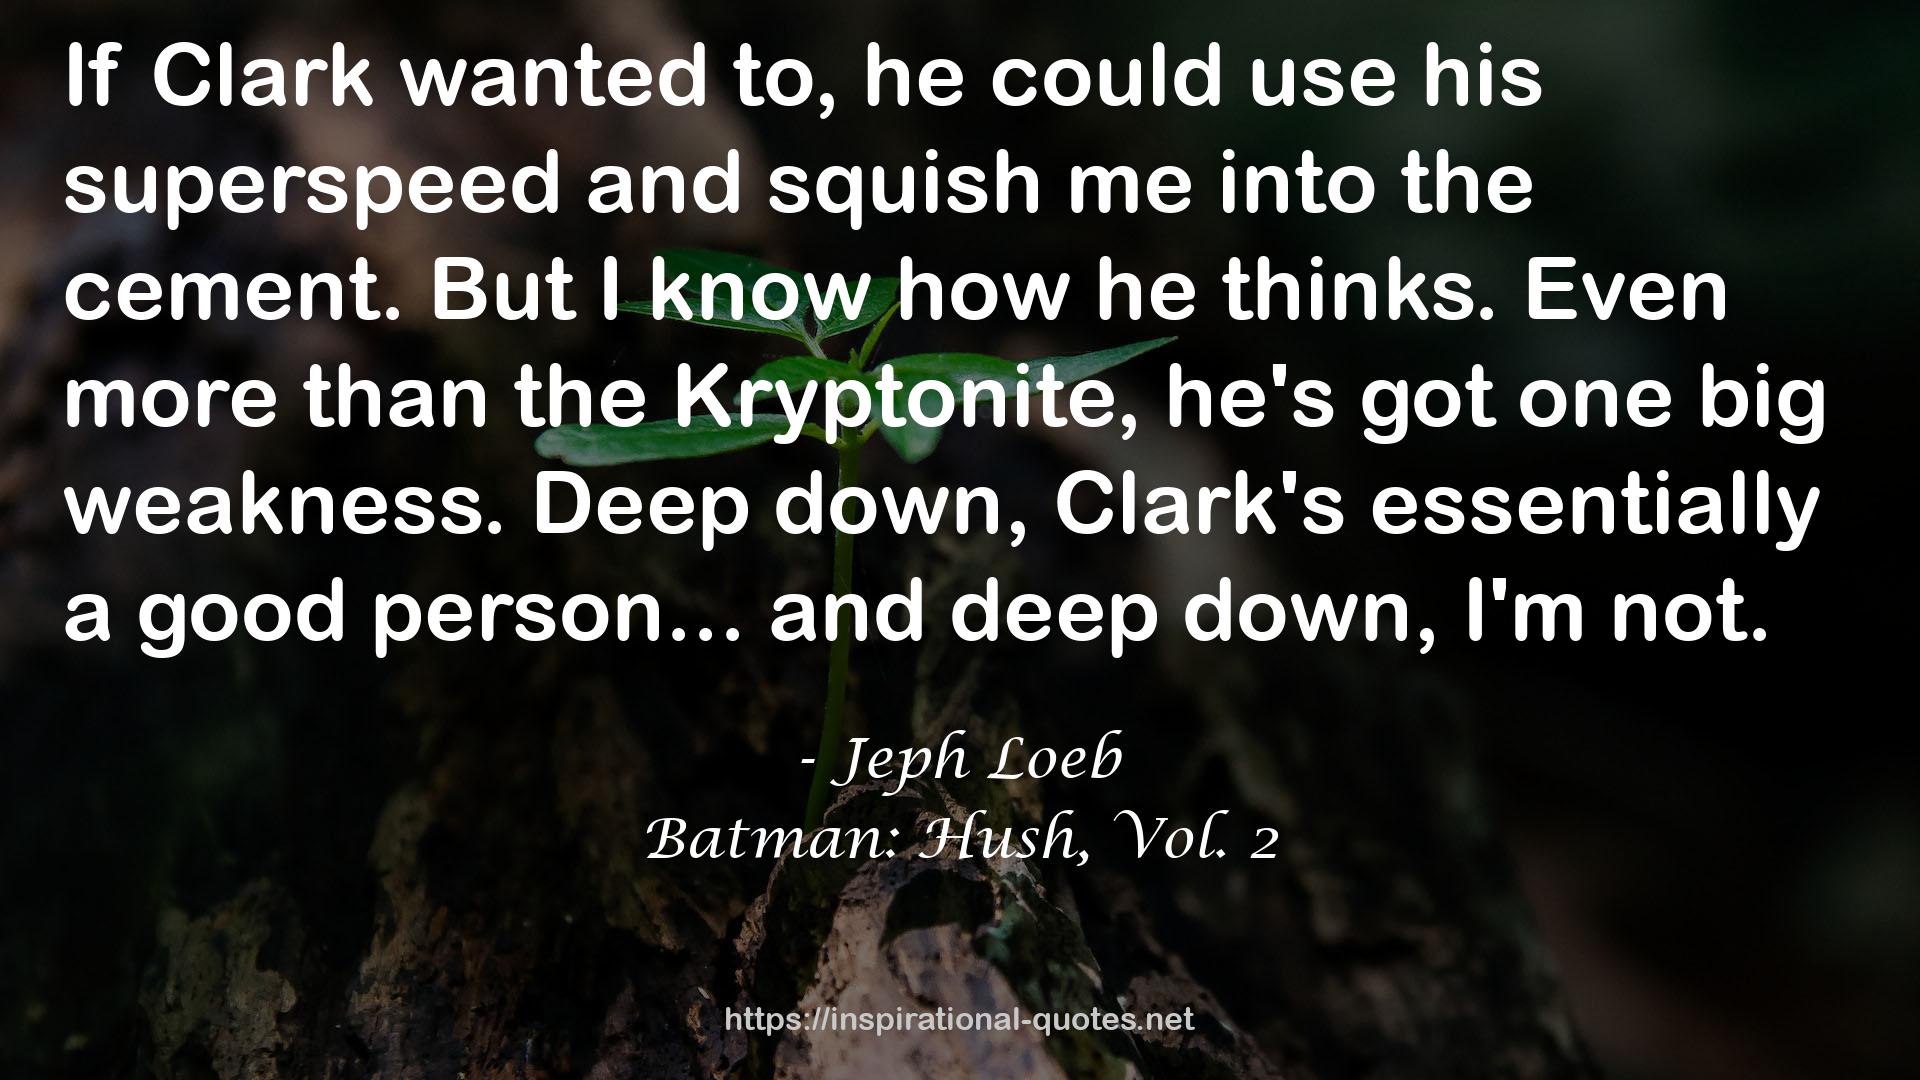 Batman: Hush, Vol. 2 QUOTES